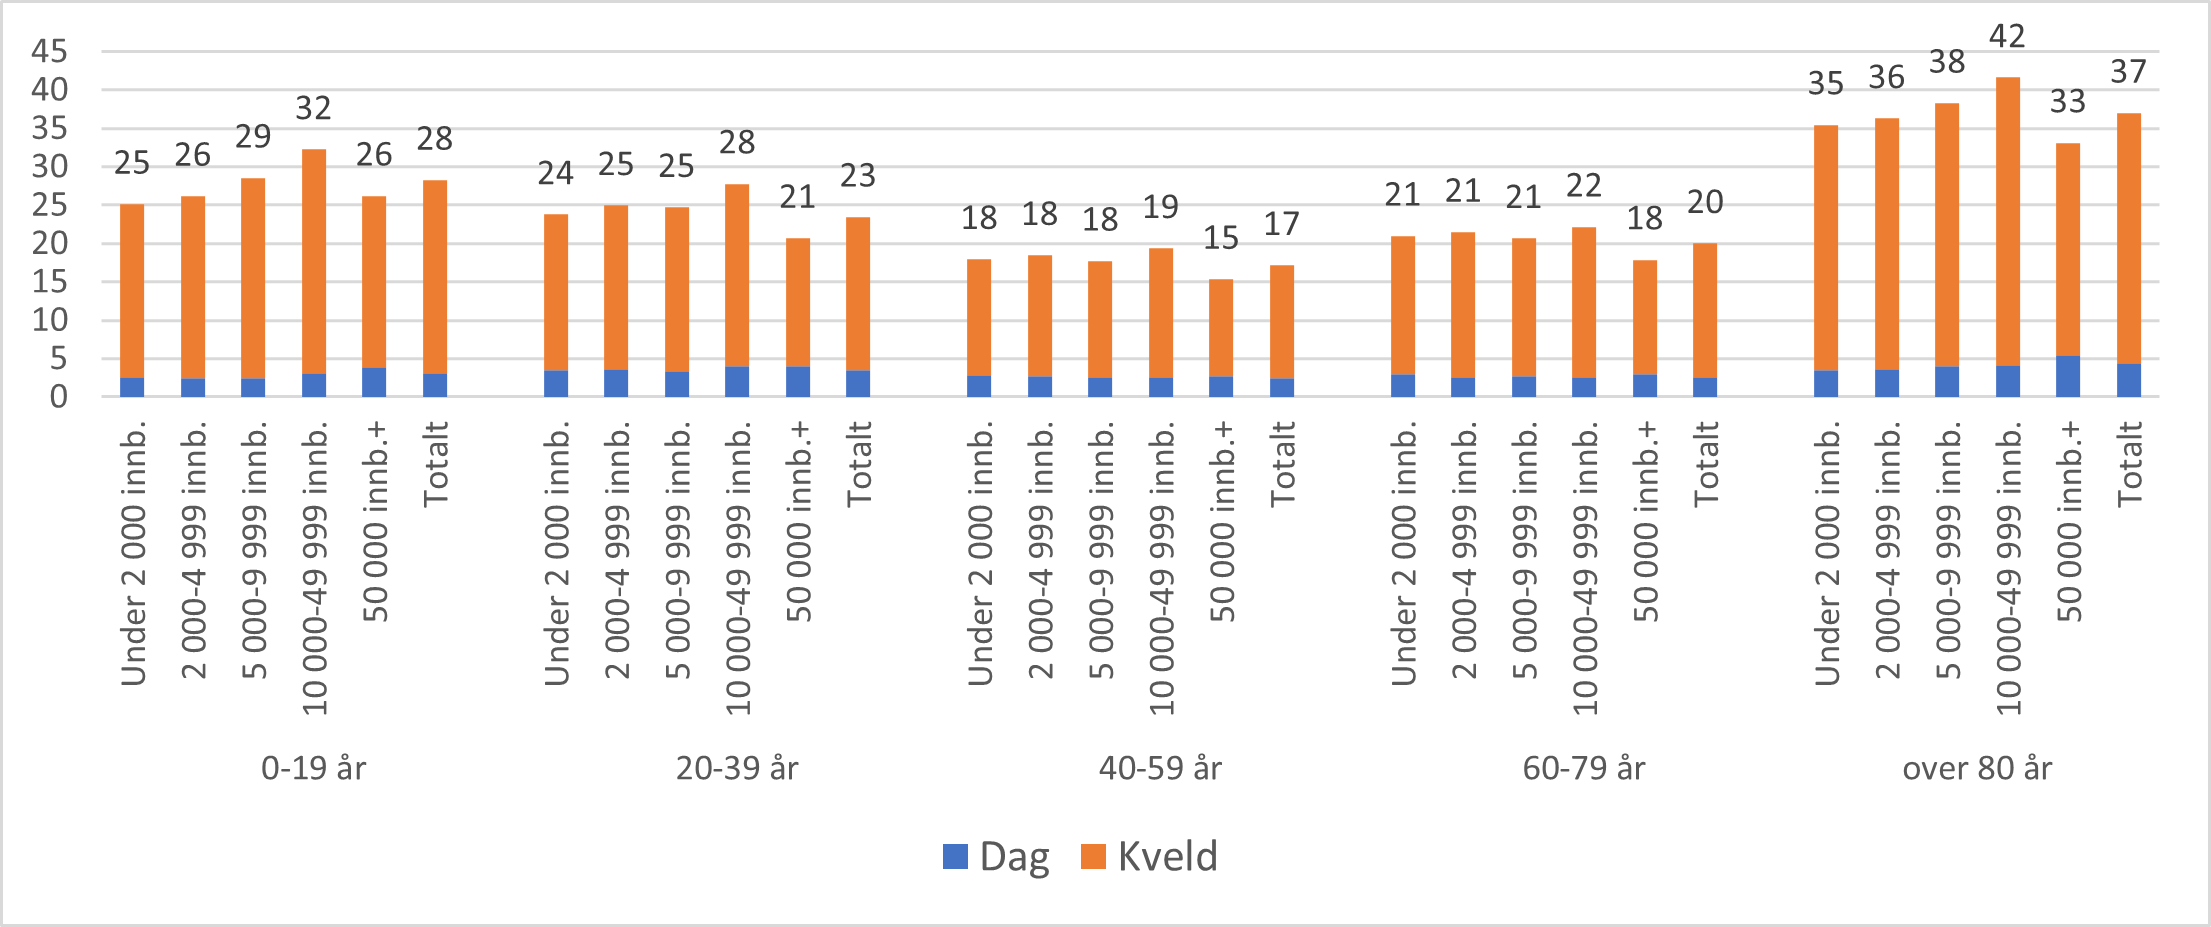 Antall konsultasjoner hos legevakt per 100 innbygger på dagtid, kveldstid og totalt*. For ulike kommunestørrelser og aldersgrupper, 2022.